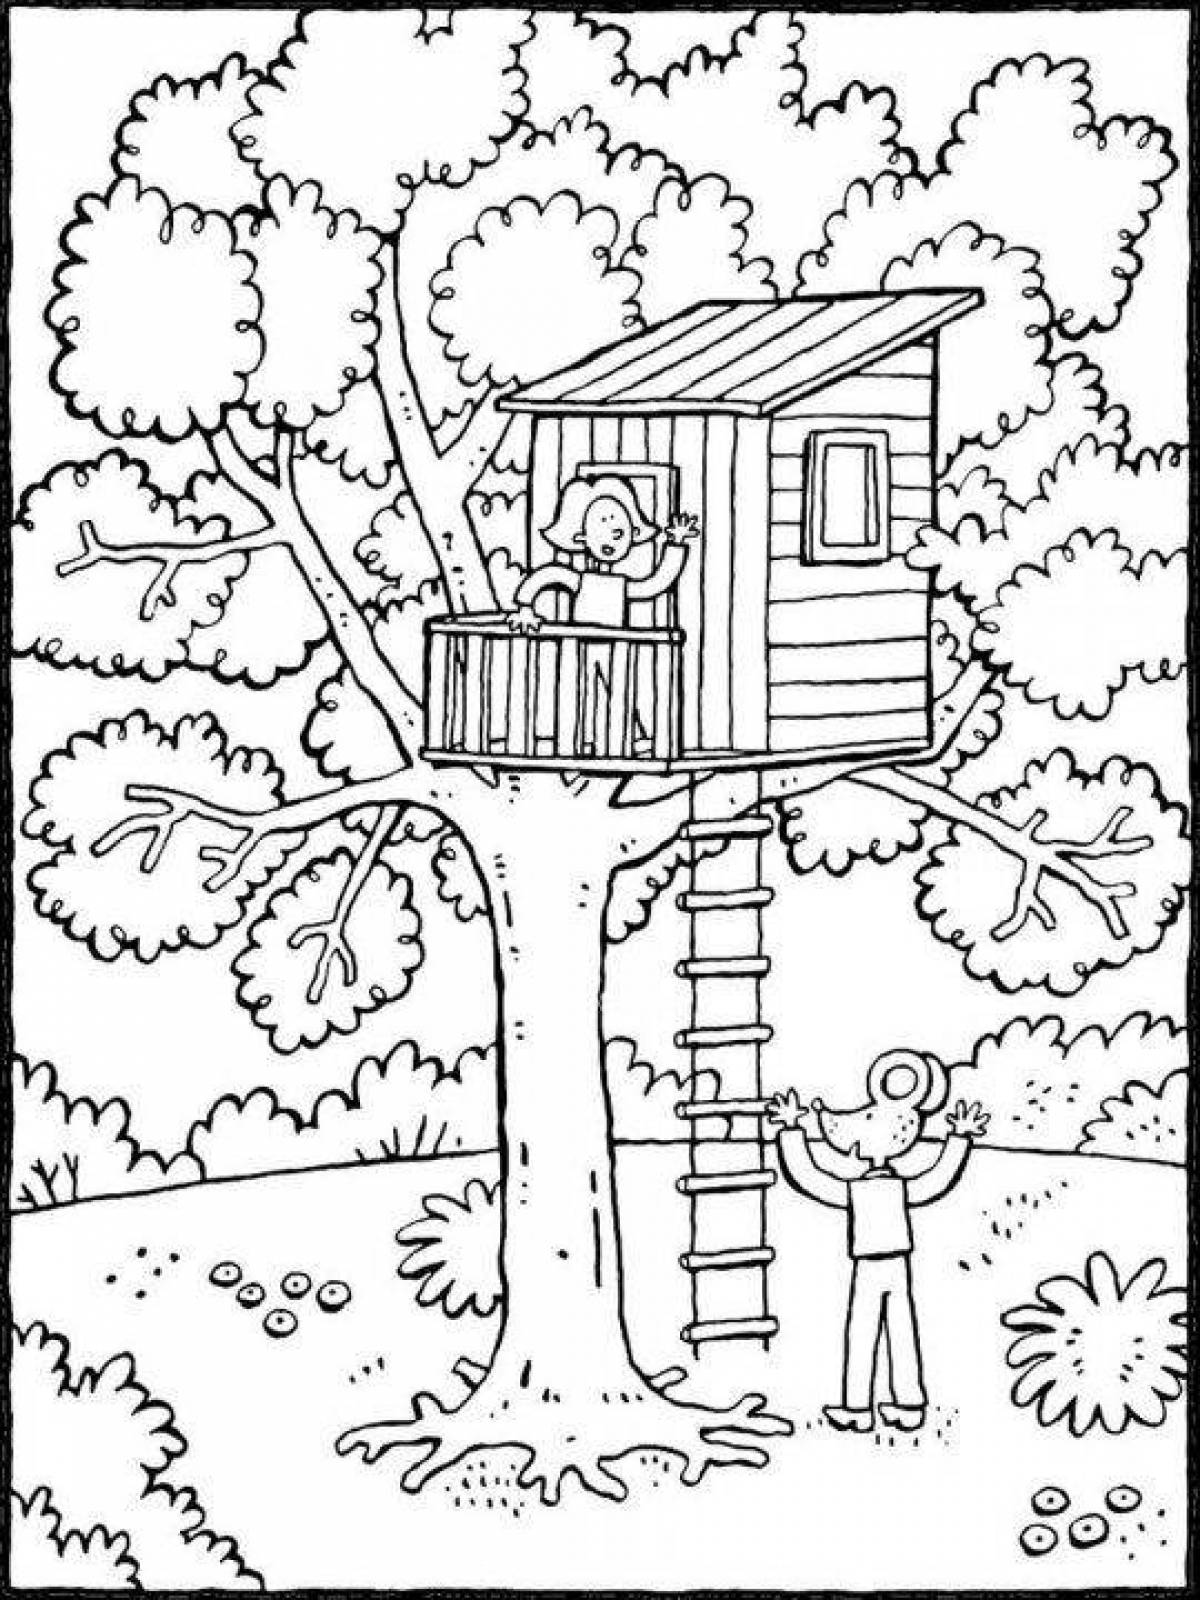 Scenic treehouse